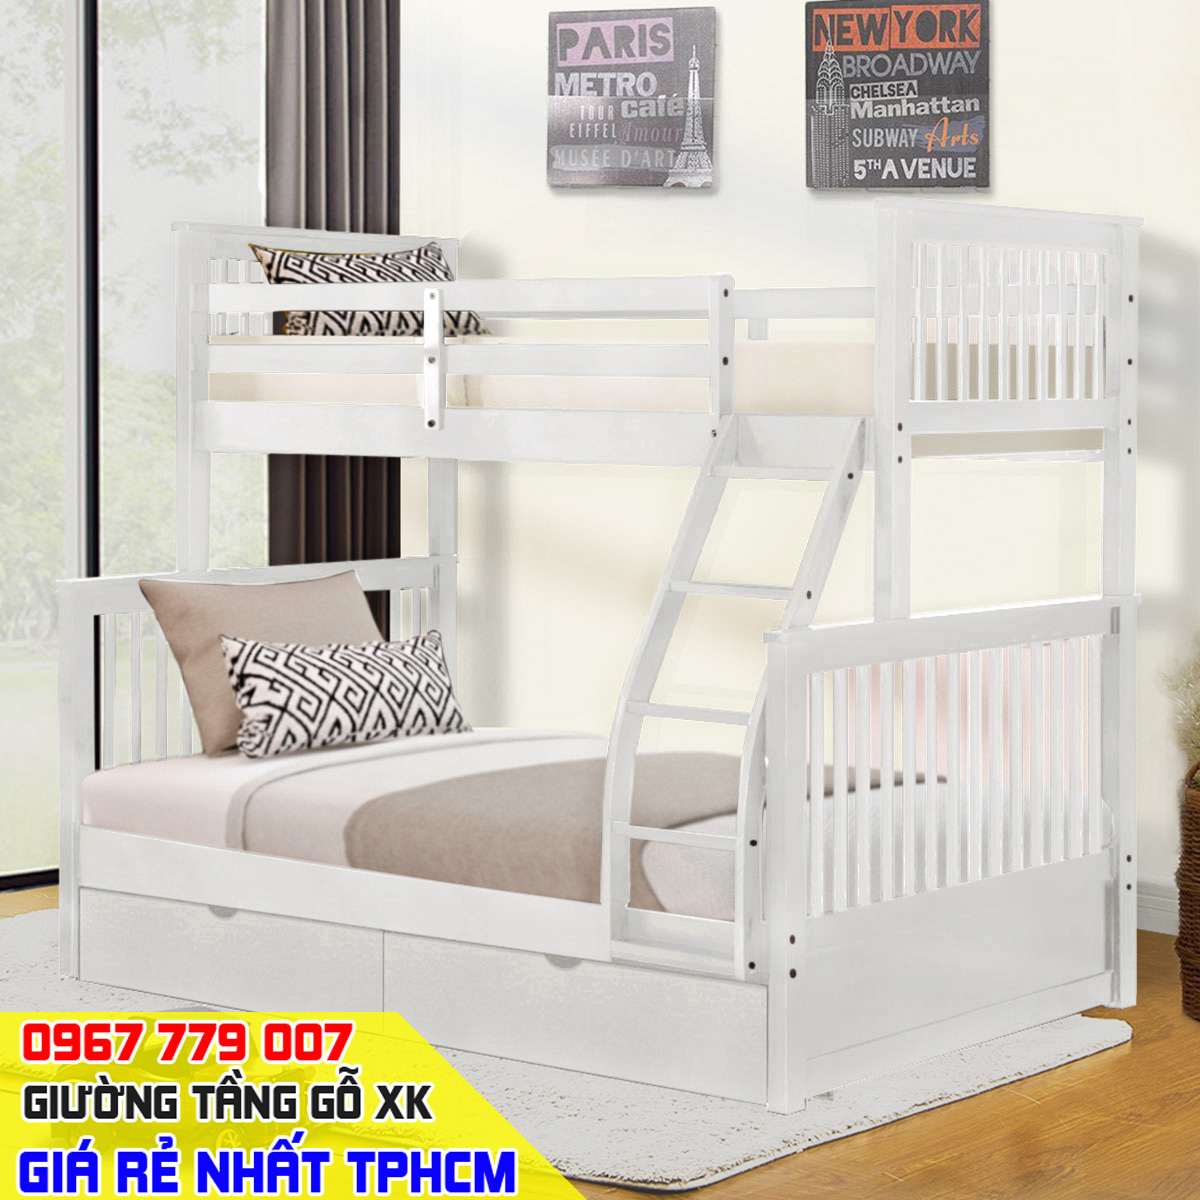 CẬP NHẬT - Mẫu giường tầng trẻ em mới nhất giá rẻ đẹp tại TPHCM 2023 - P3